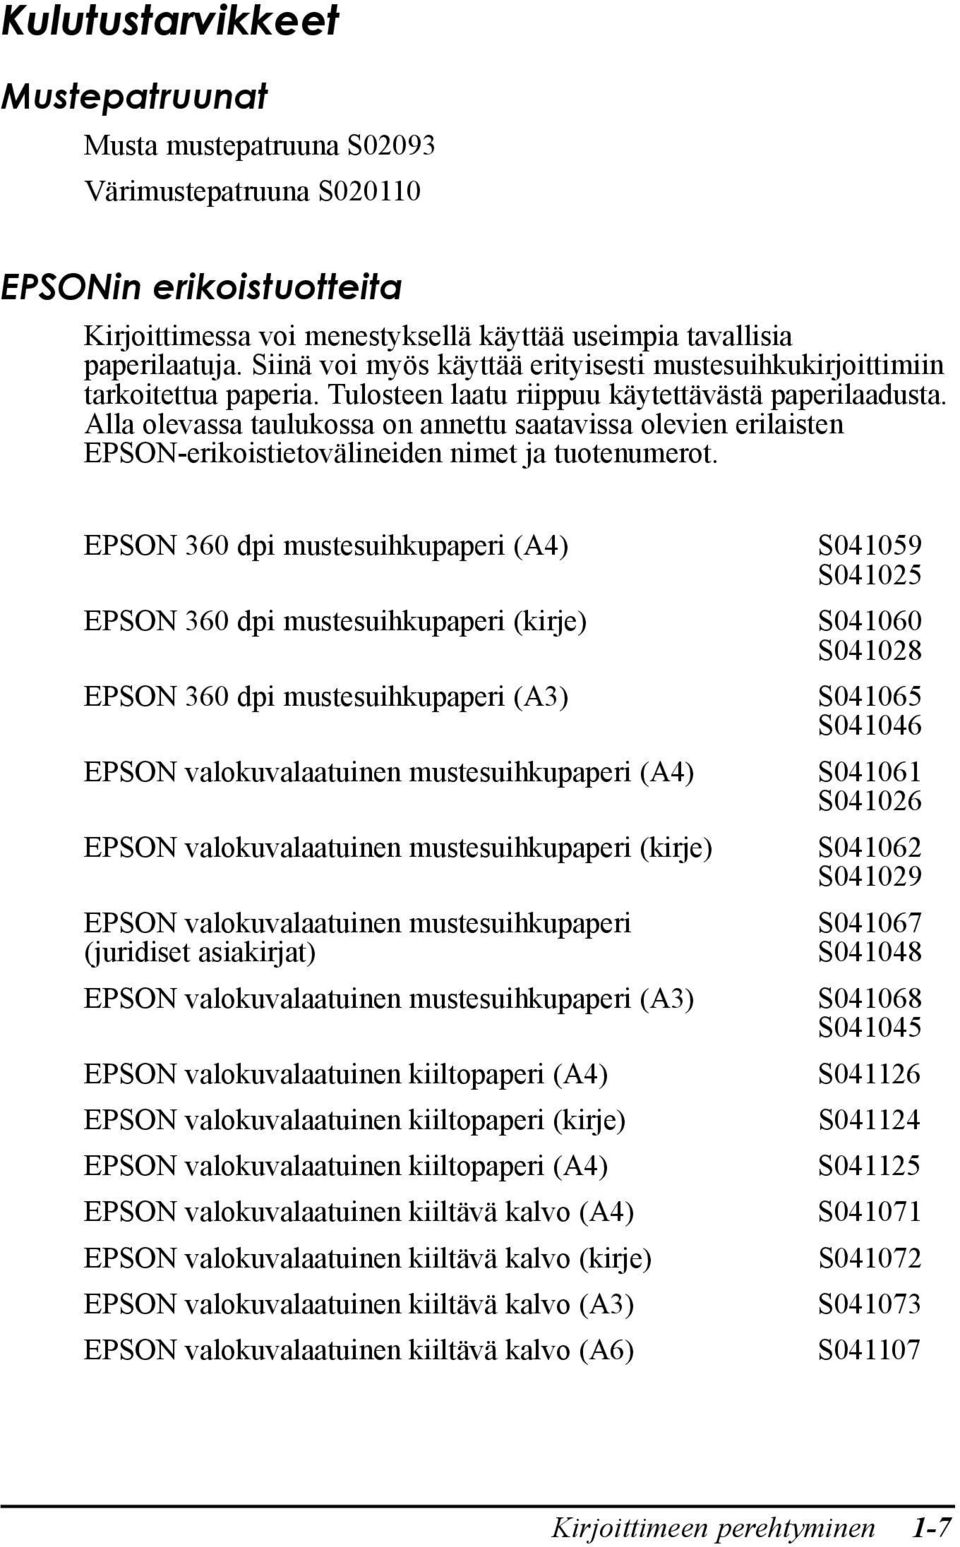 Alla olevassa taulukossa on annettu saatavissa olevien erilaisten EPSON-erikoistietovŠlineiden nimet ja tuotenumerot.